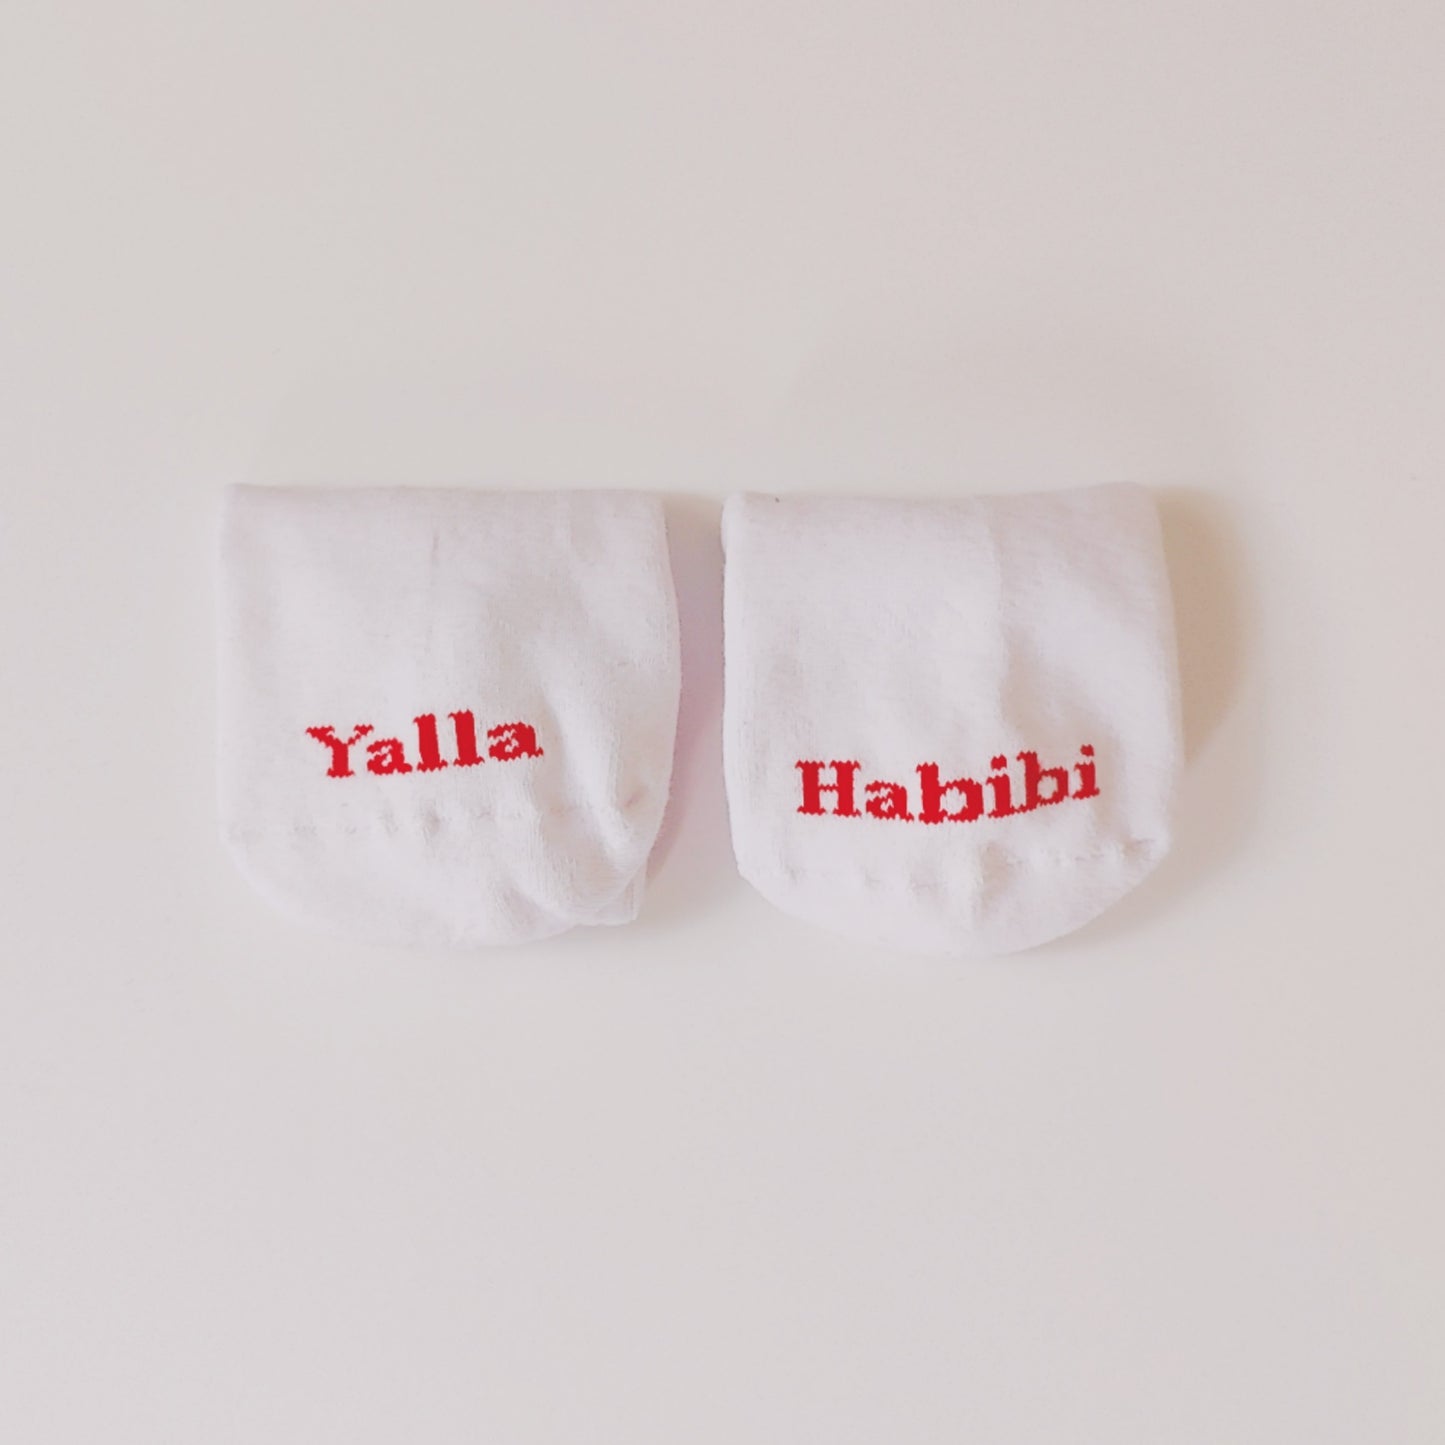 Socks Yalla hahibi wom(men)